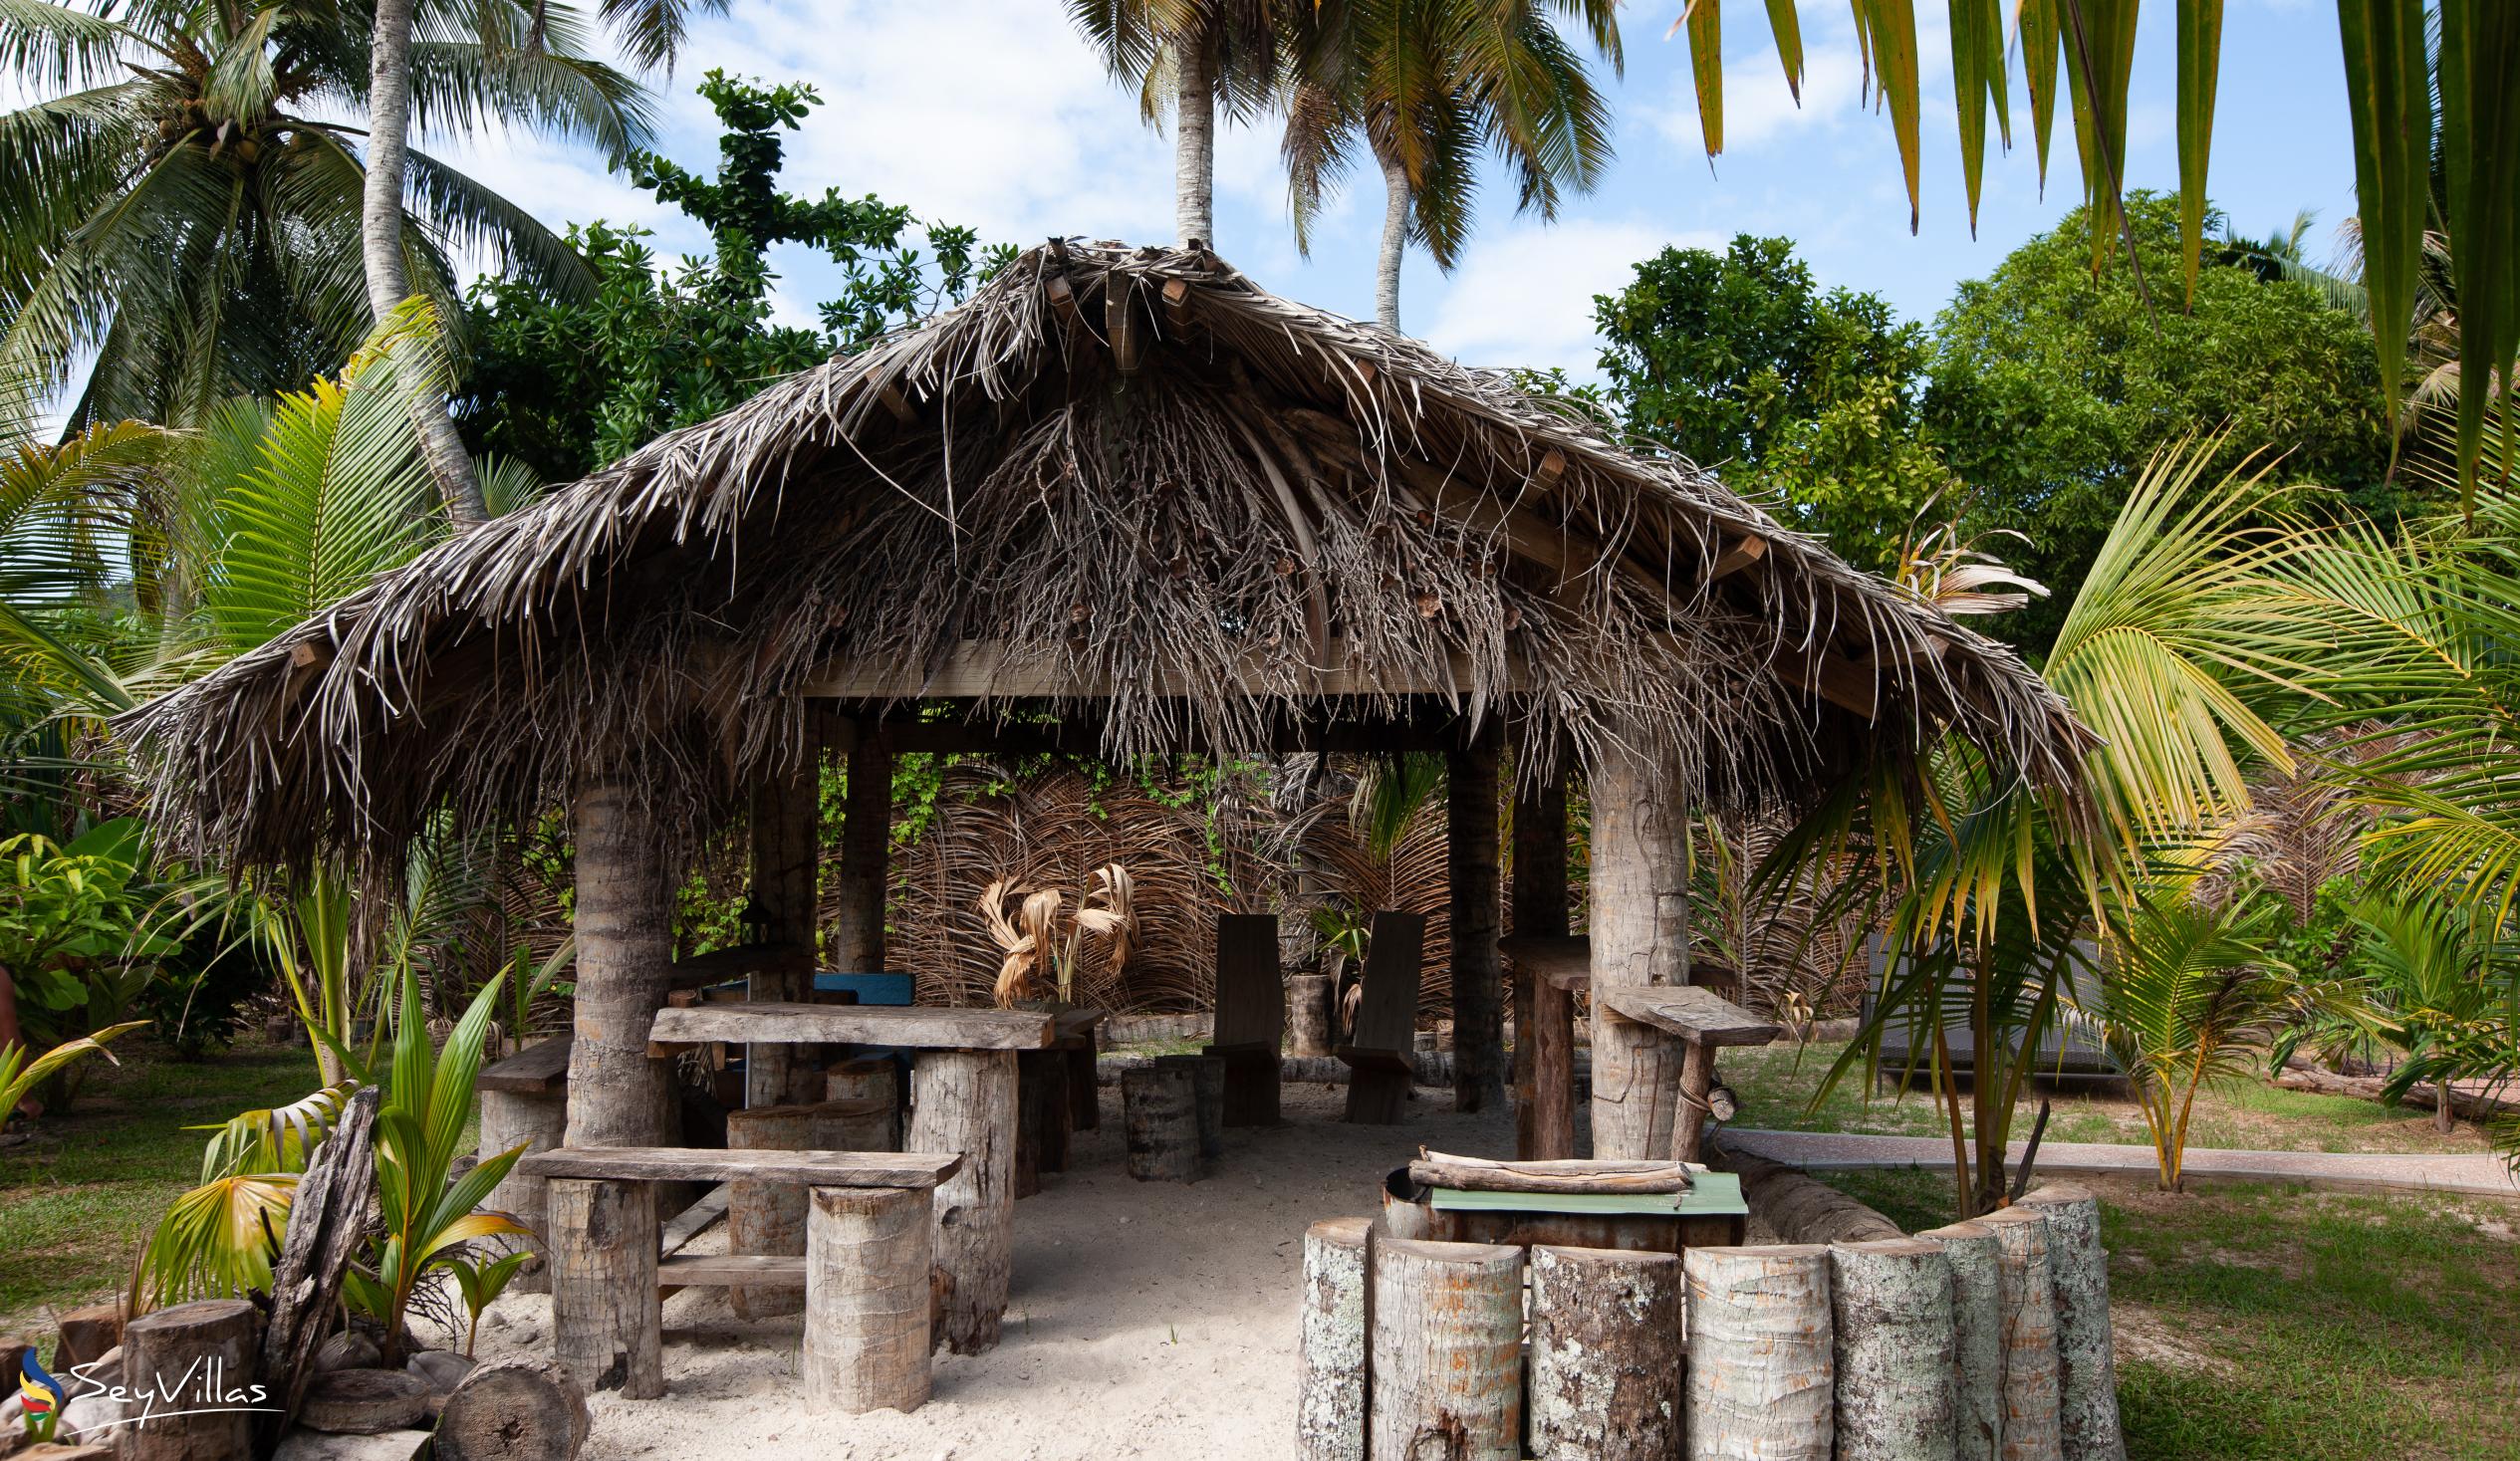 Photo 12: Coco de Mahi - Outdoor area - La Digue (Seychelles)